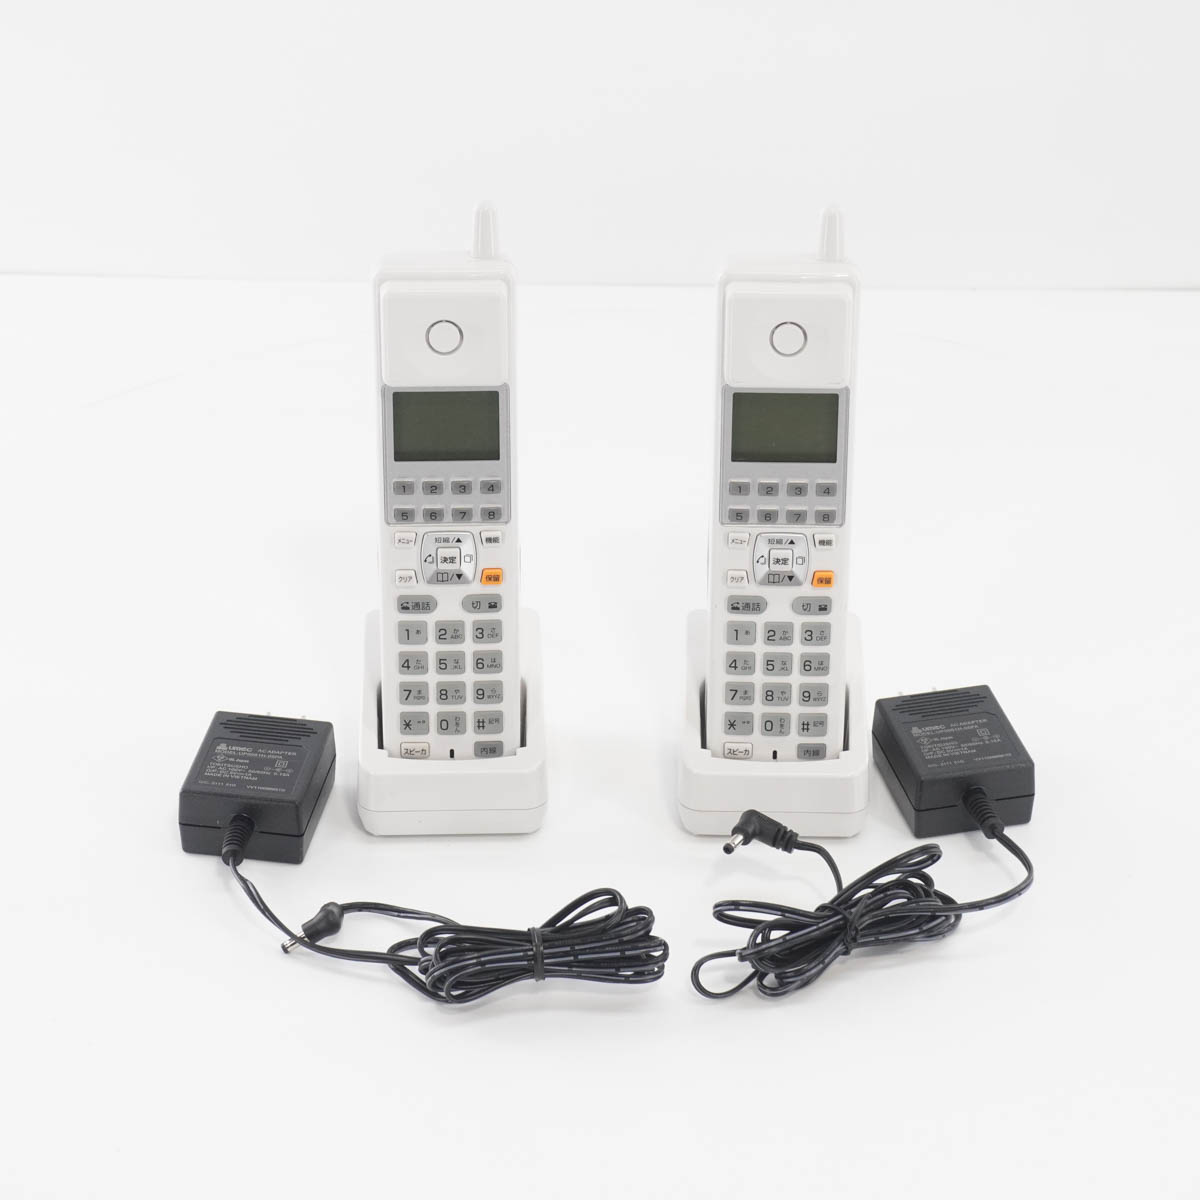 PG]USED 8日保証 セット 21年製 NTT αZX ZXS-ME-(1) 主装置 電話機 